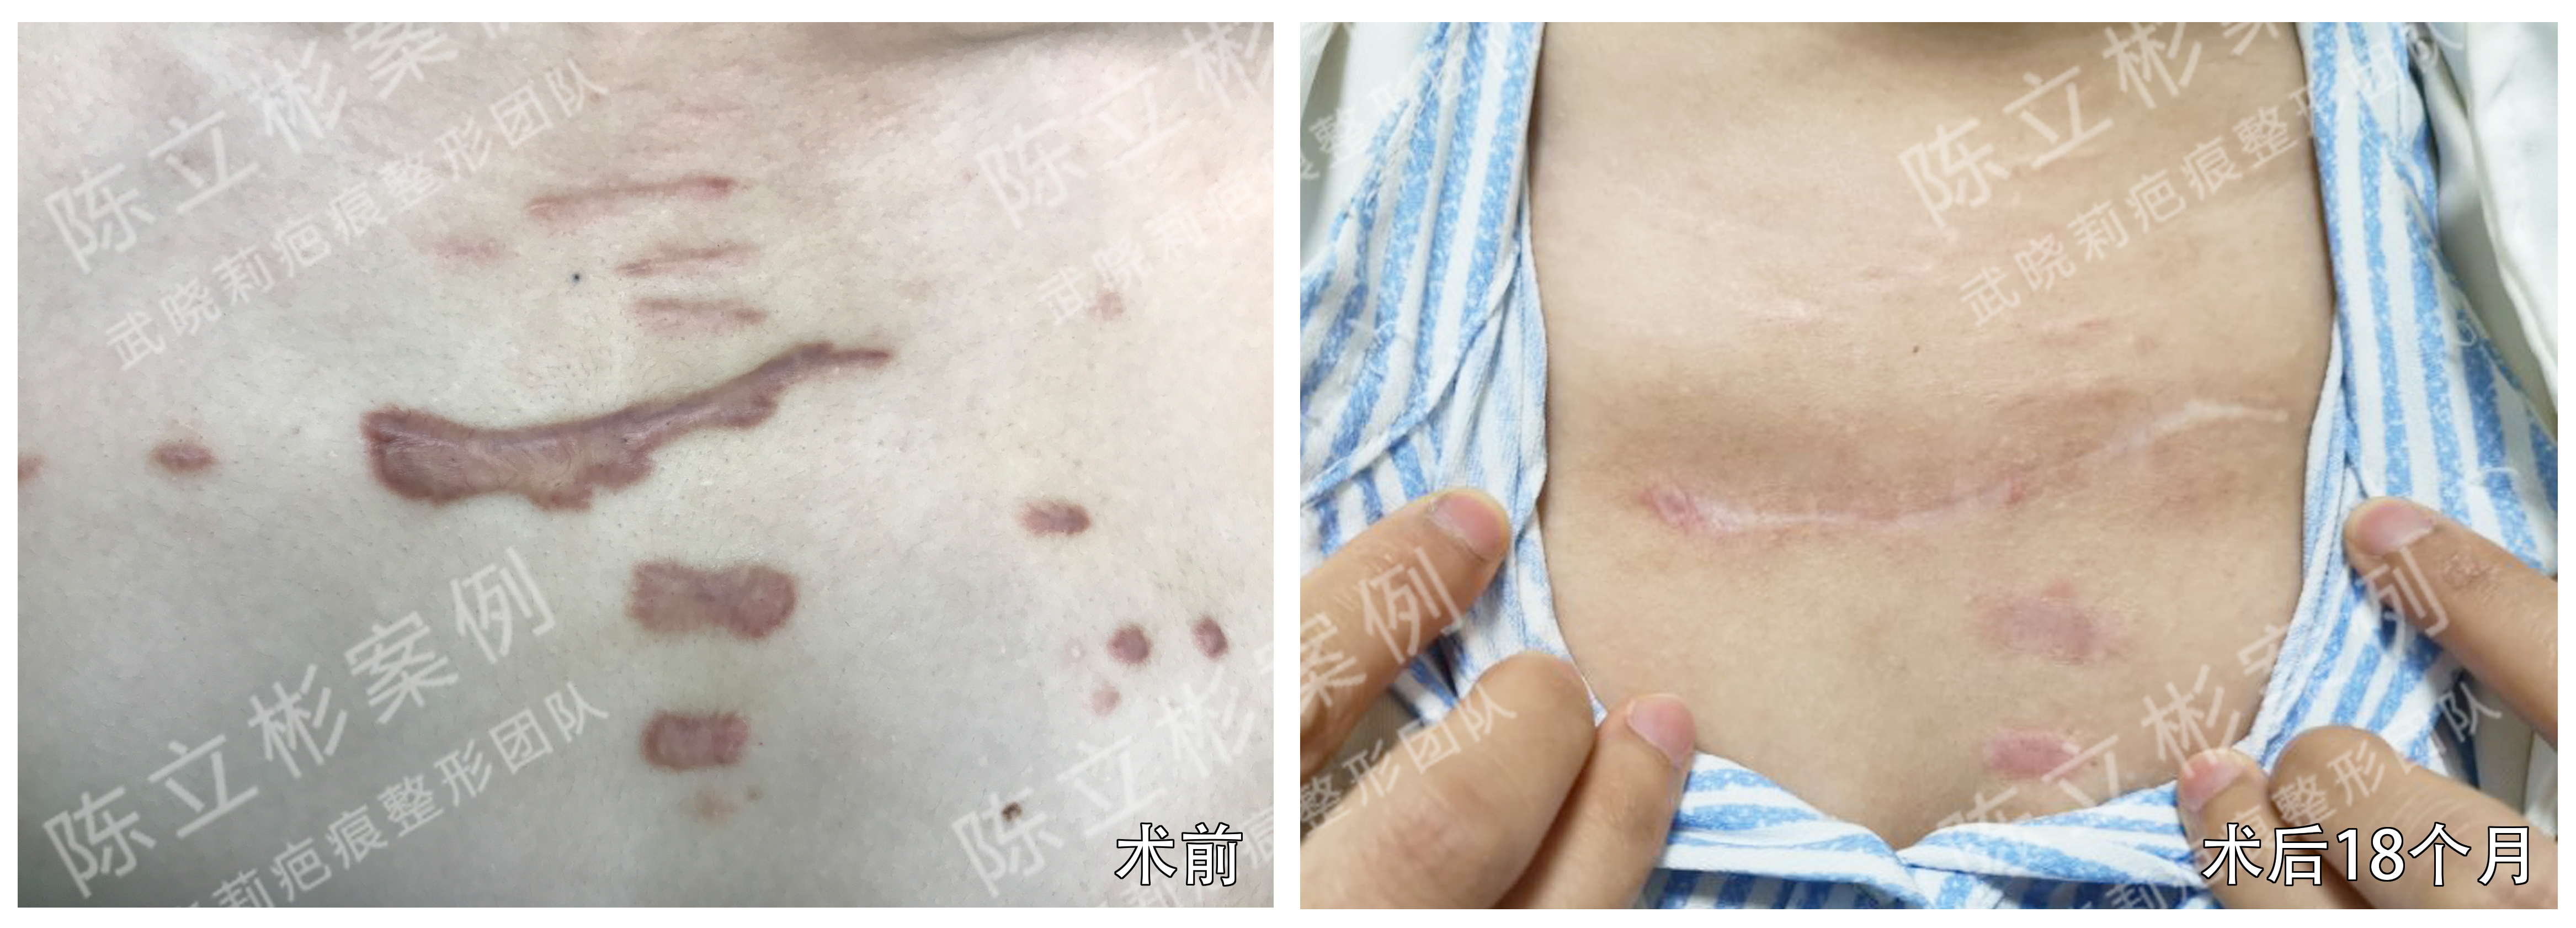 胸部疤痕疙瘩术后18个月复诊记录